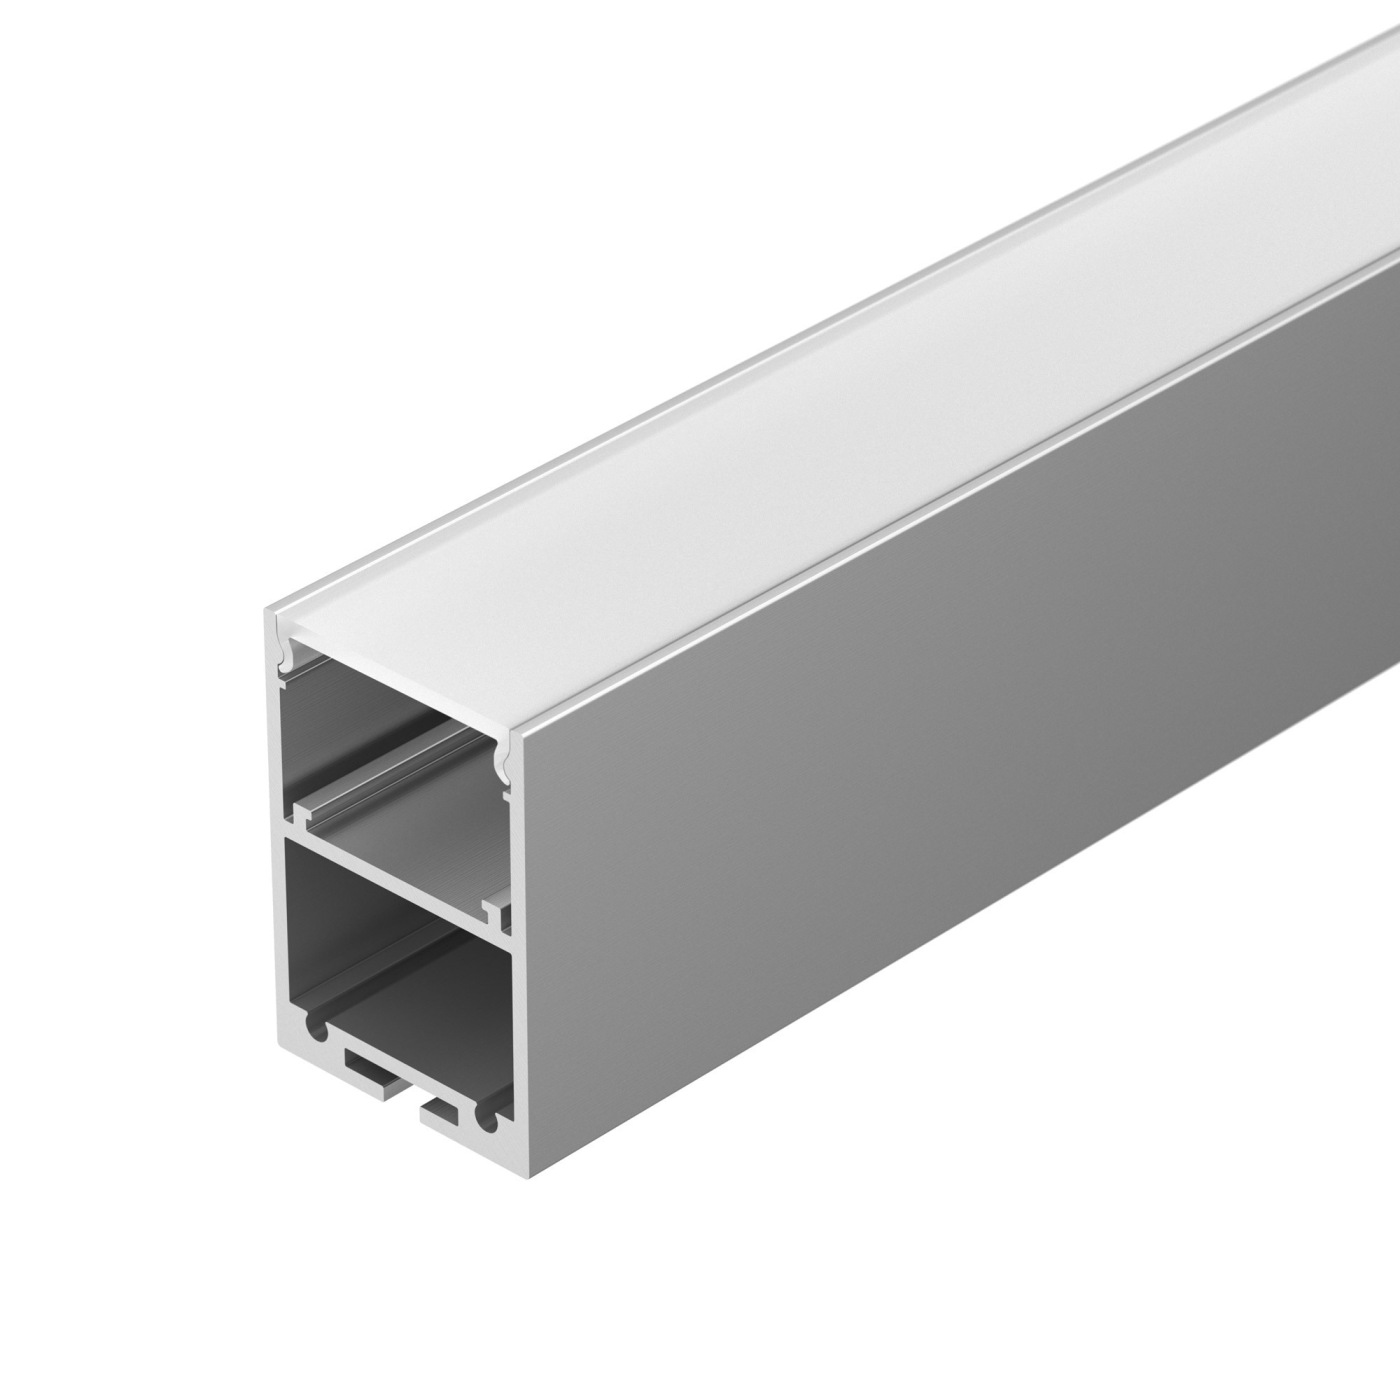 Профиль ARH-LINE-3750A-2000 ANOD профиль алюминиевый накладной подвесной с отсеком для бп серебро cab266